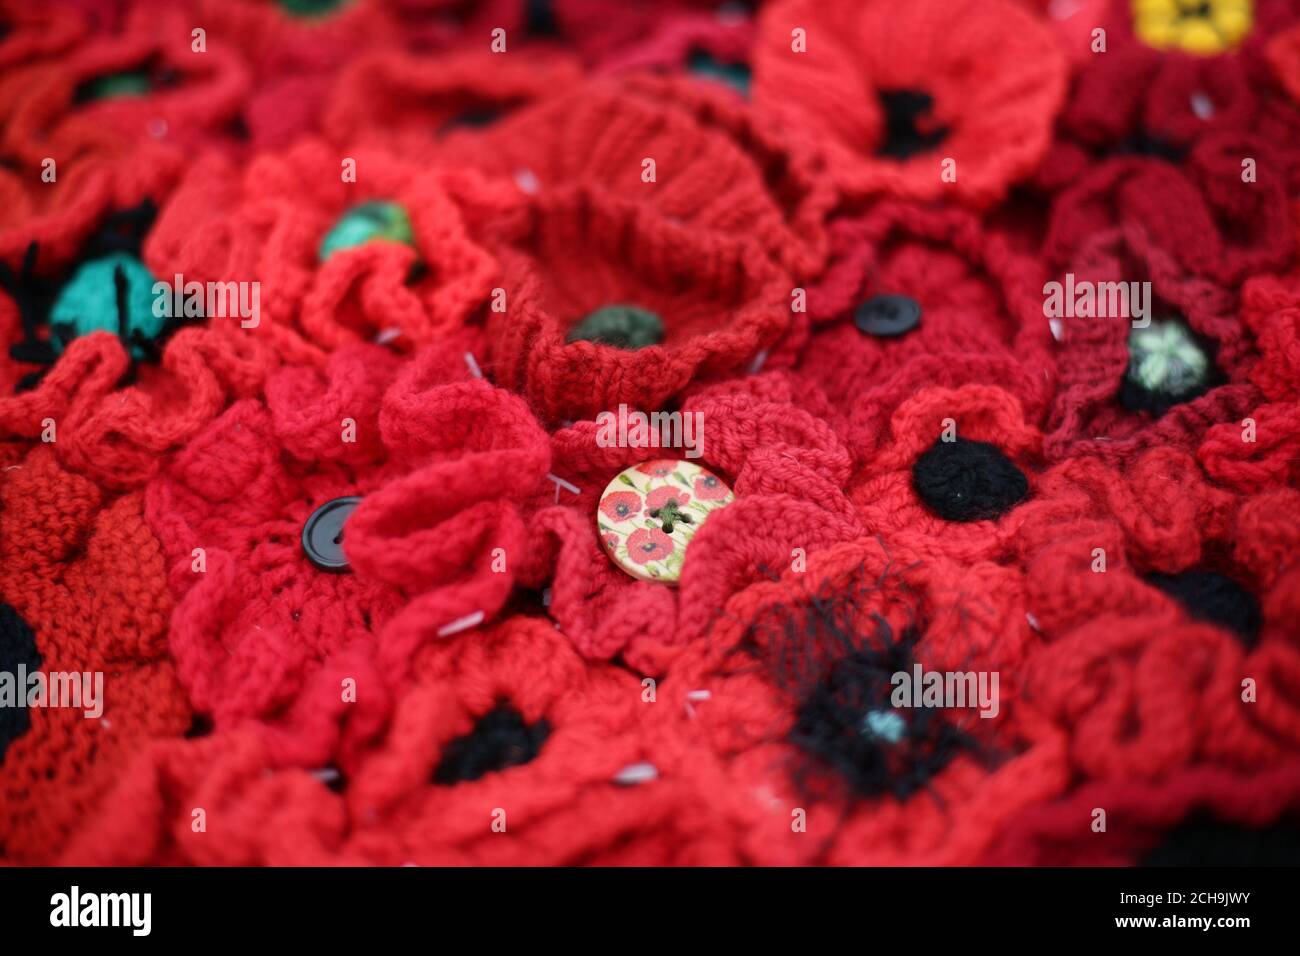 Algunas de las amapolas individuales que conforman la exposición de 5000 amapolas - que utiliza casi 300,000 amapolas de crocheted individualmente, que cubren casi 2.000m2 (21.000pies cuadrados) en los terrenos del Royal Hospital Chelsea - durante un día de vista previa en el Chelsea Flower Show en Londres. Foto de stock